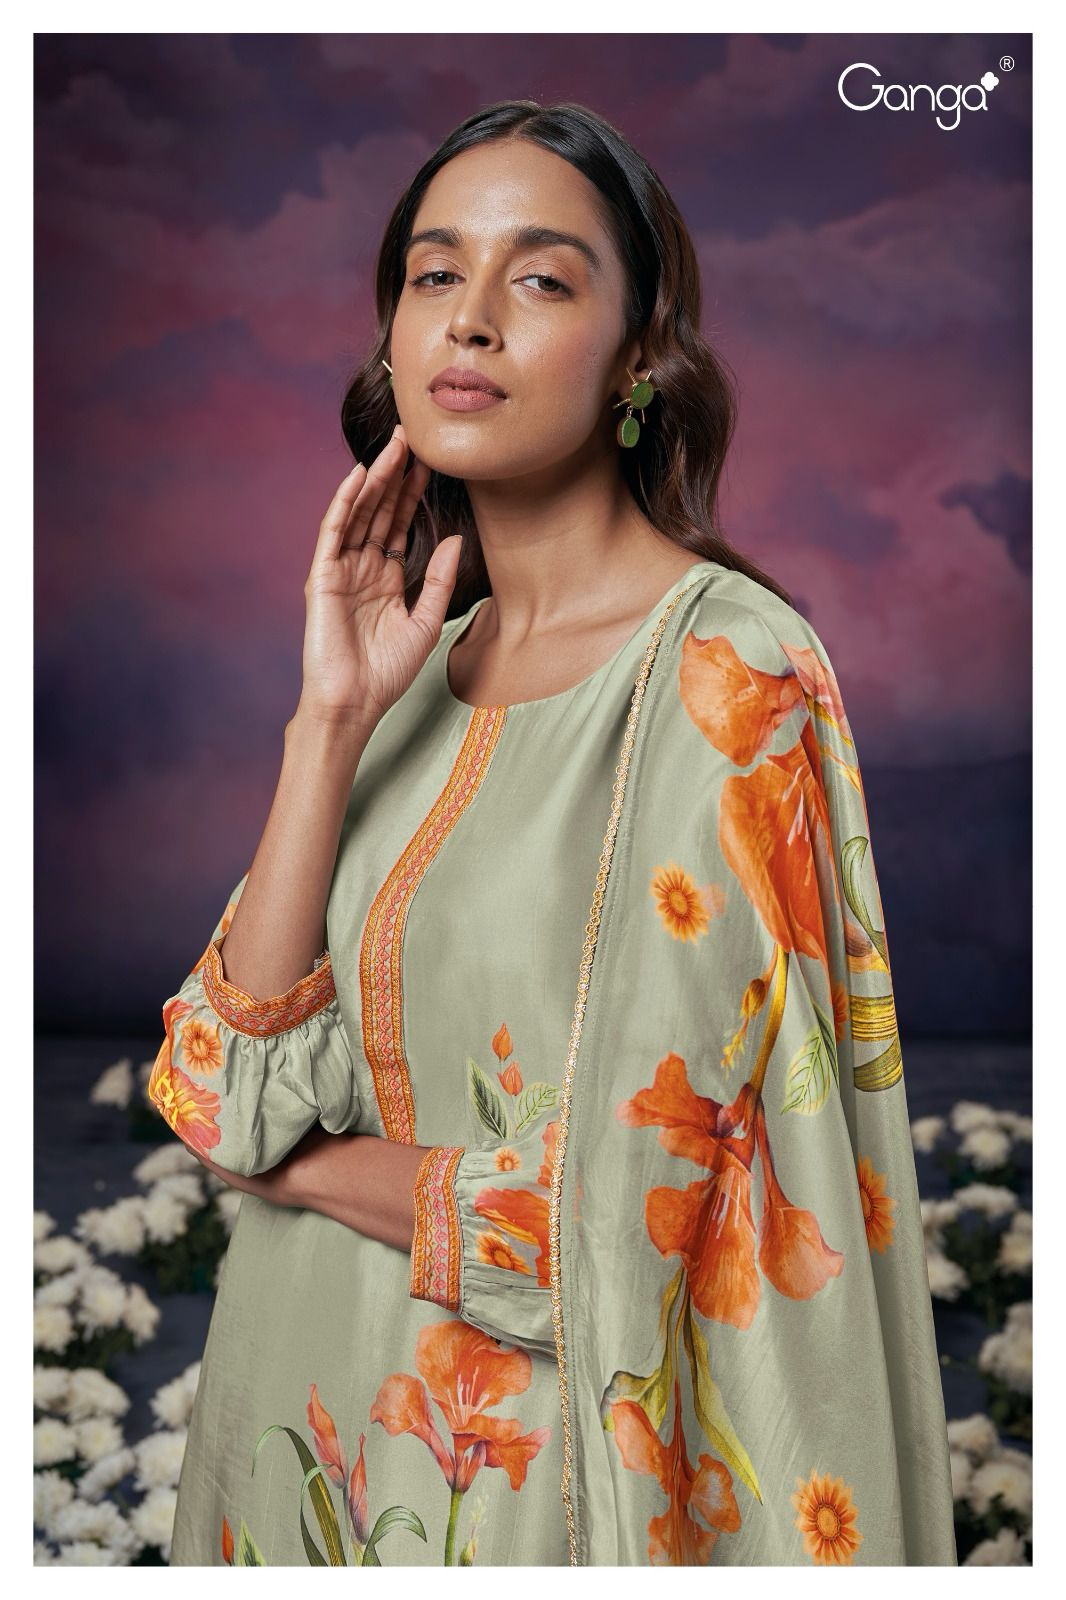 Adeline 2252 Ganga Bembarg Silk Plazzo Style Suits